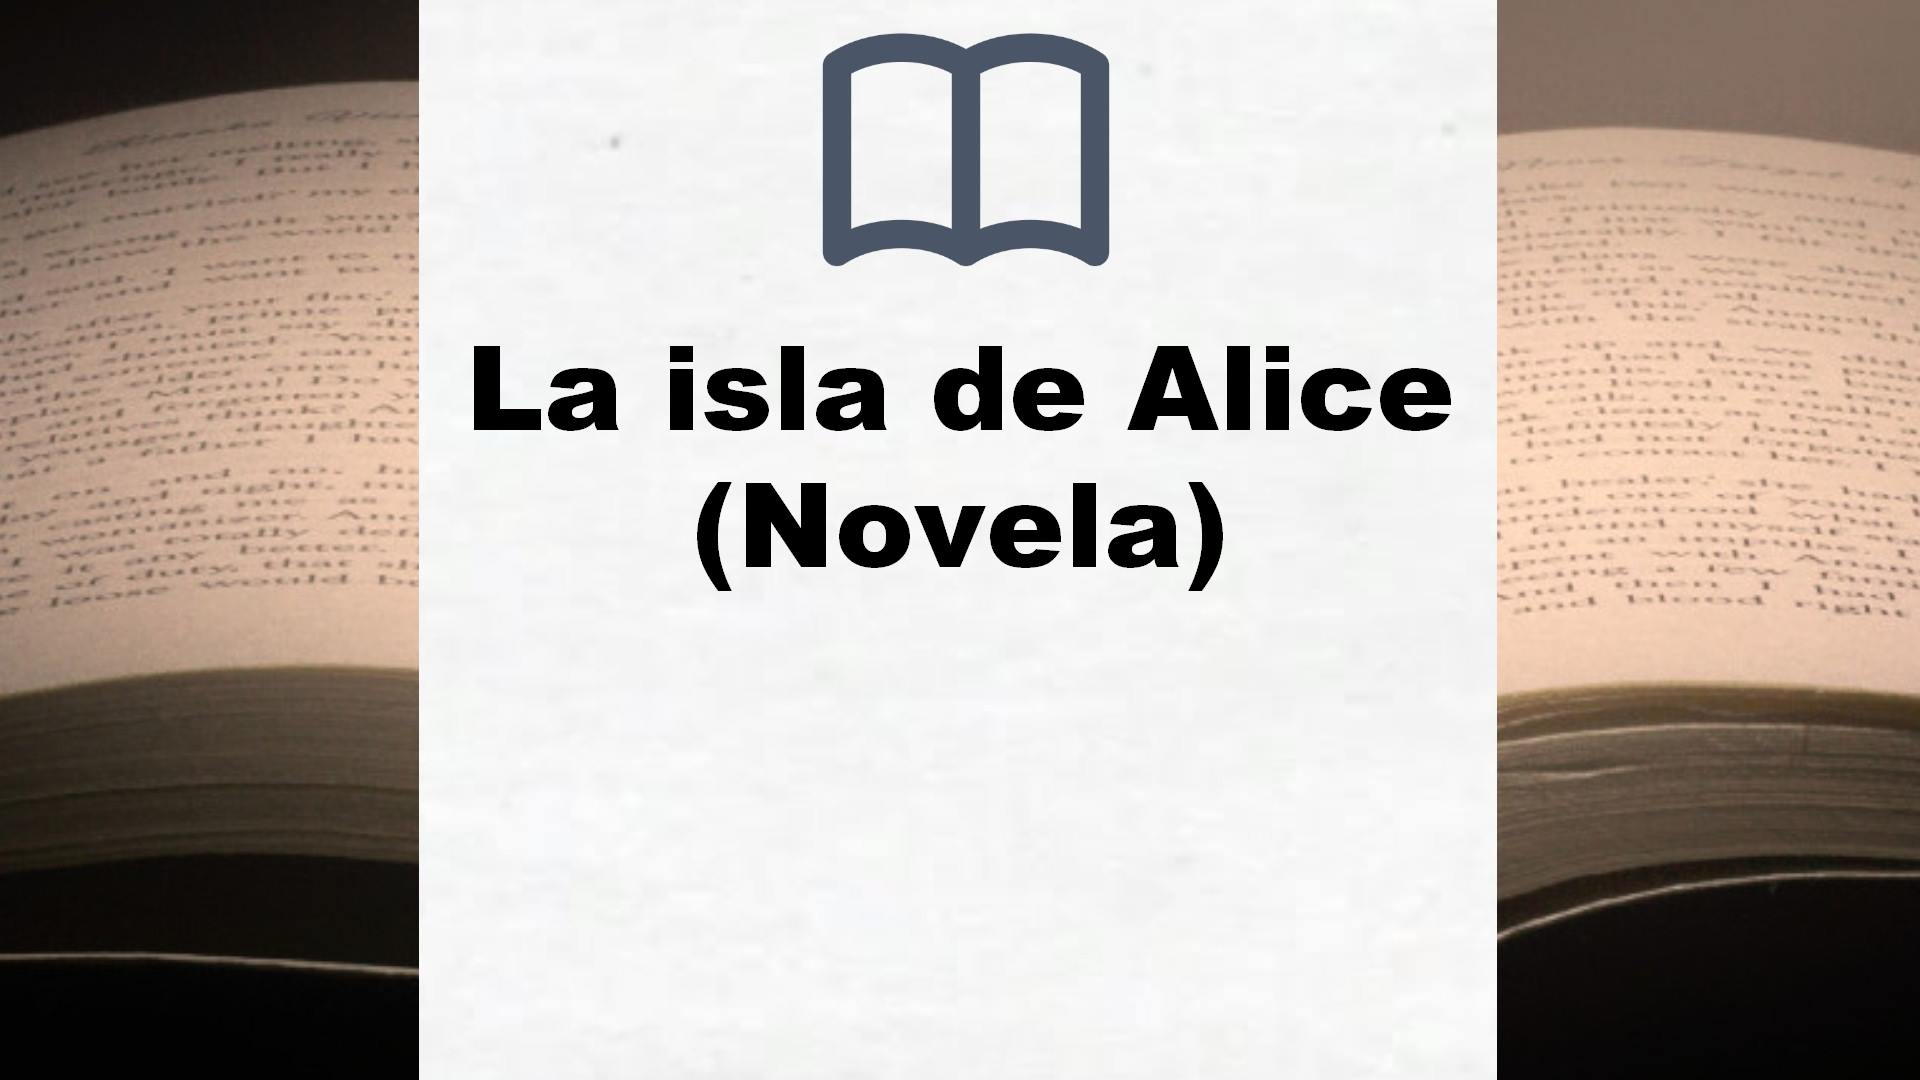 La isla de Alice (Novela) – Reseña del libro